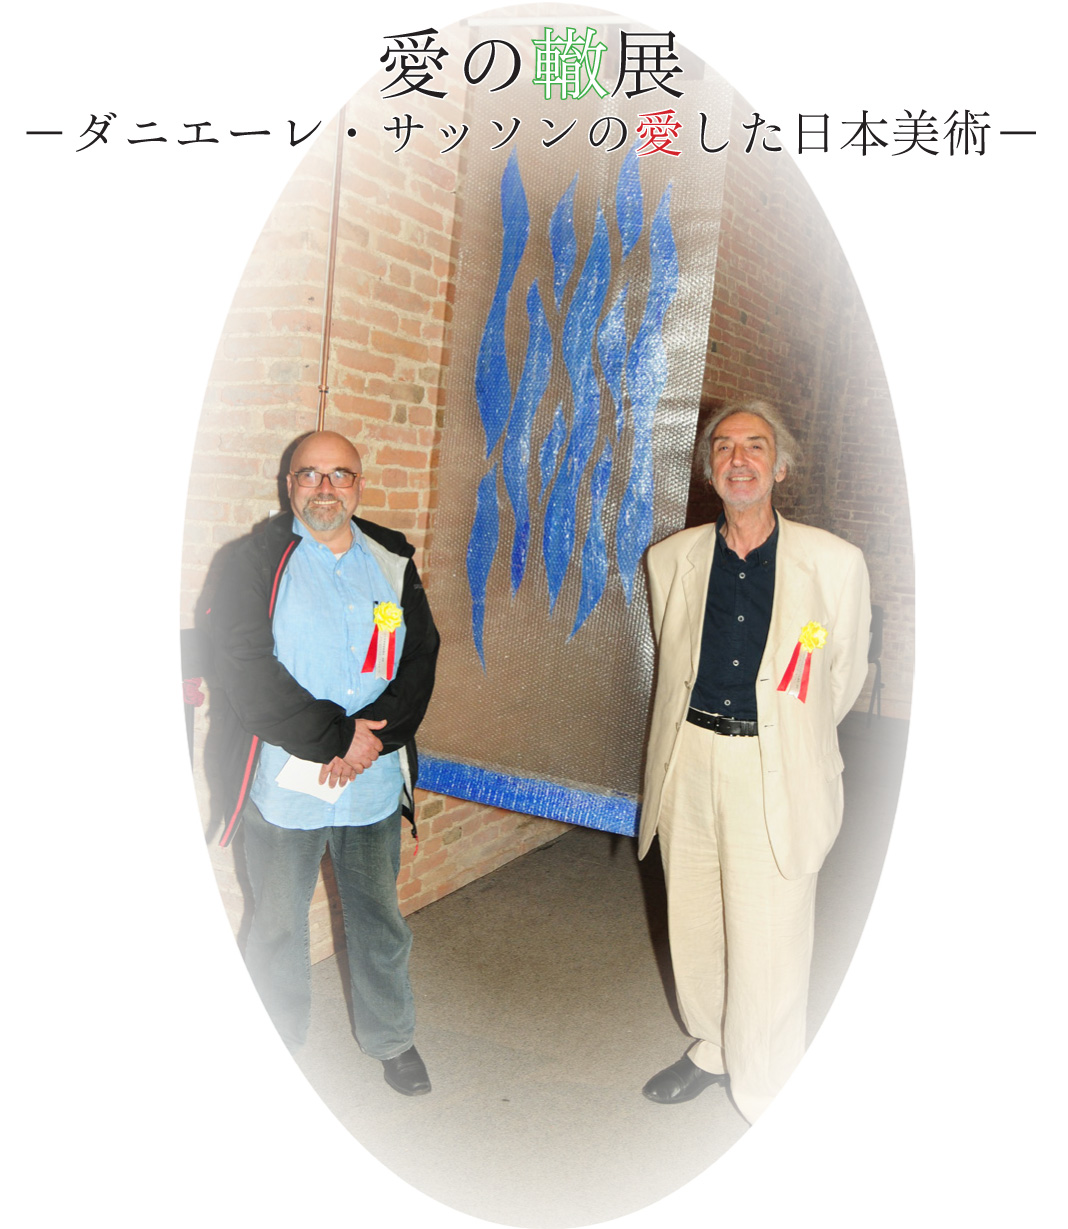 愛の轍展ーダニエーレ･サッソンの愛した日本美術ー展示会のご案内